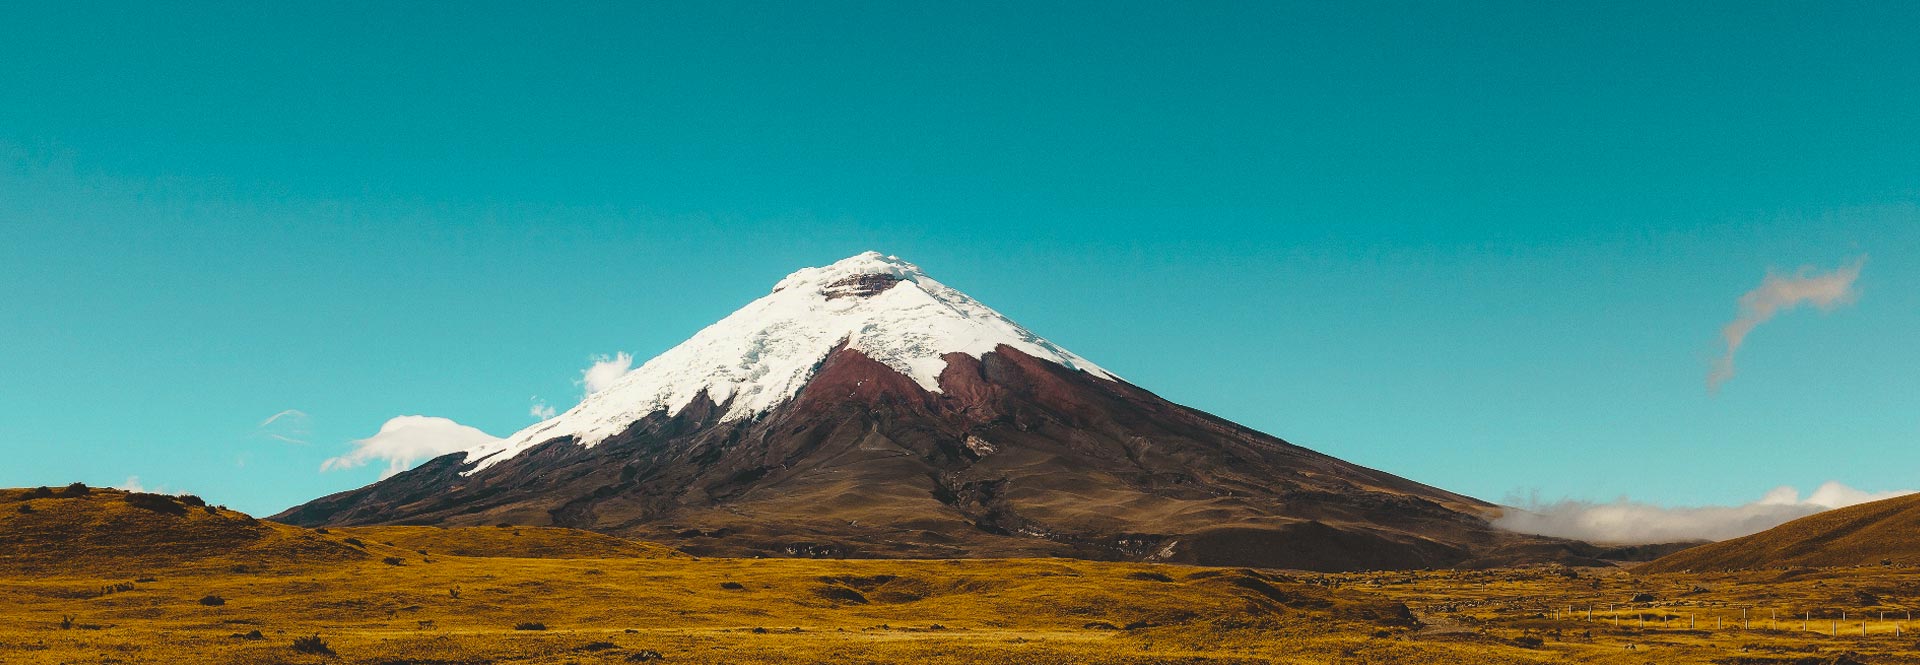 Experiencias únicas Guía de viaje Ecuador